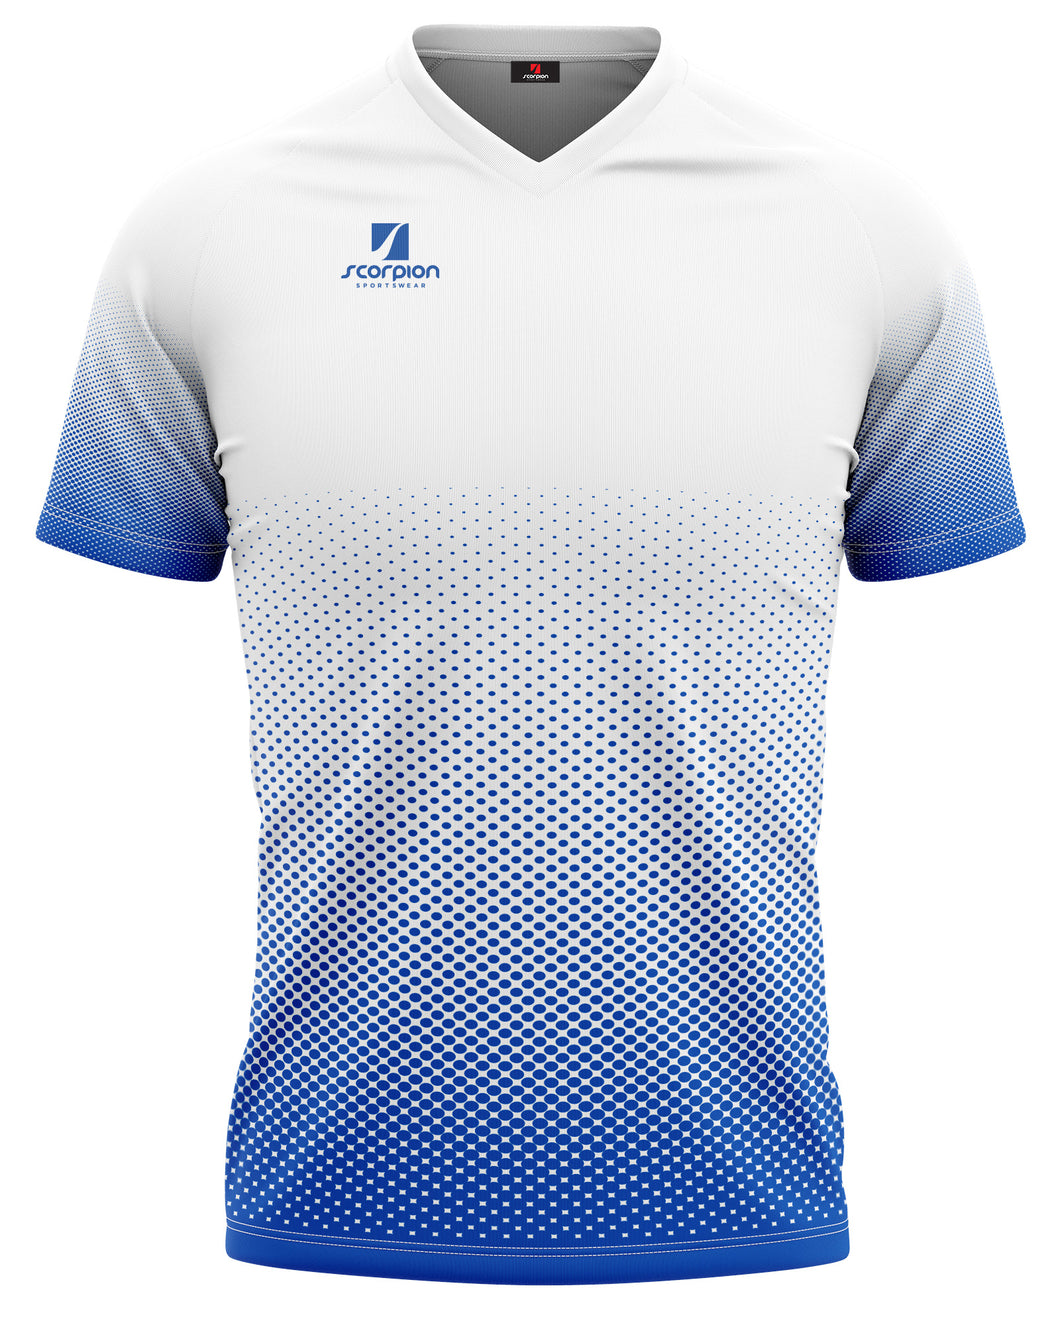 Football Shirts Pattern Neptune - White / Royal